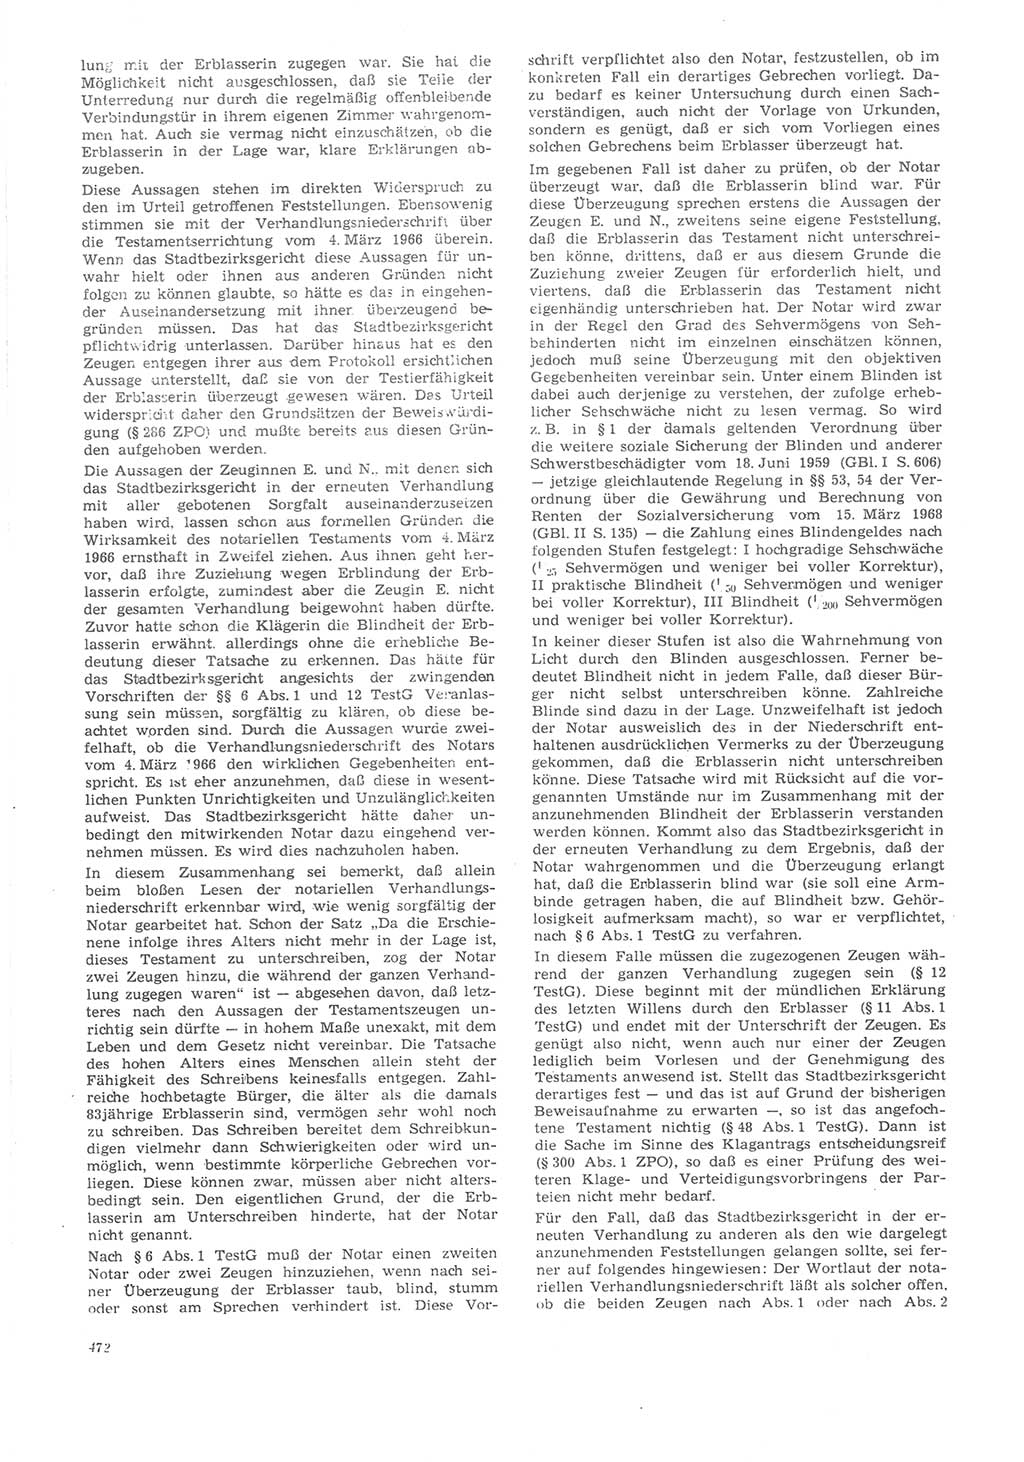 Neue Justiz (NJ), Zeitschrift für Recht und Rechtswissenschaft [Deutsche Demokratische Republik (DDR)], 22. Jahrgang 1968, Seite 472 (NJ DDR 1968, S. 472)